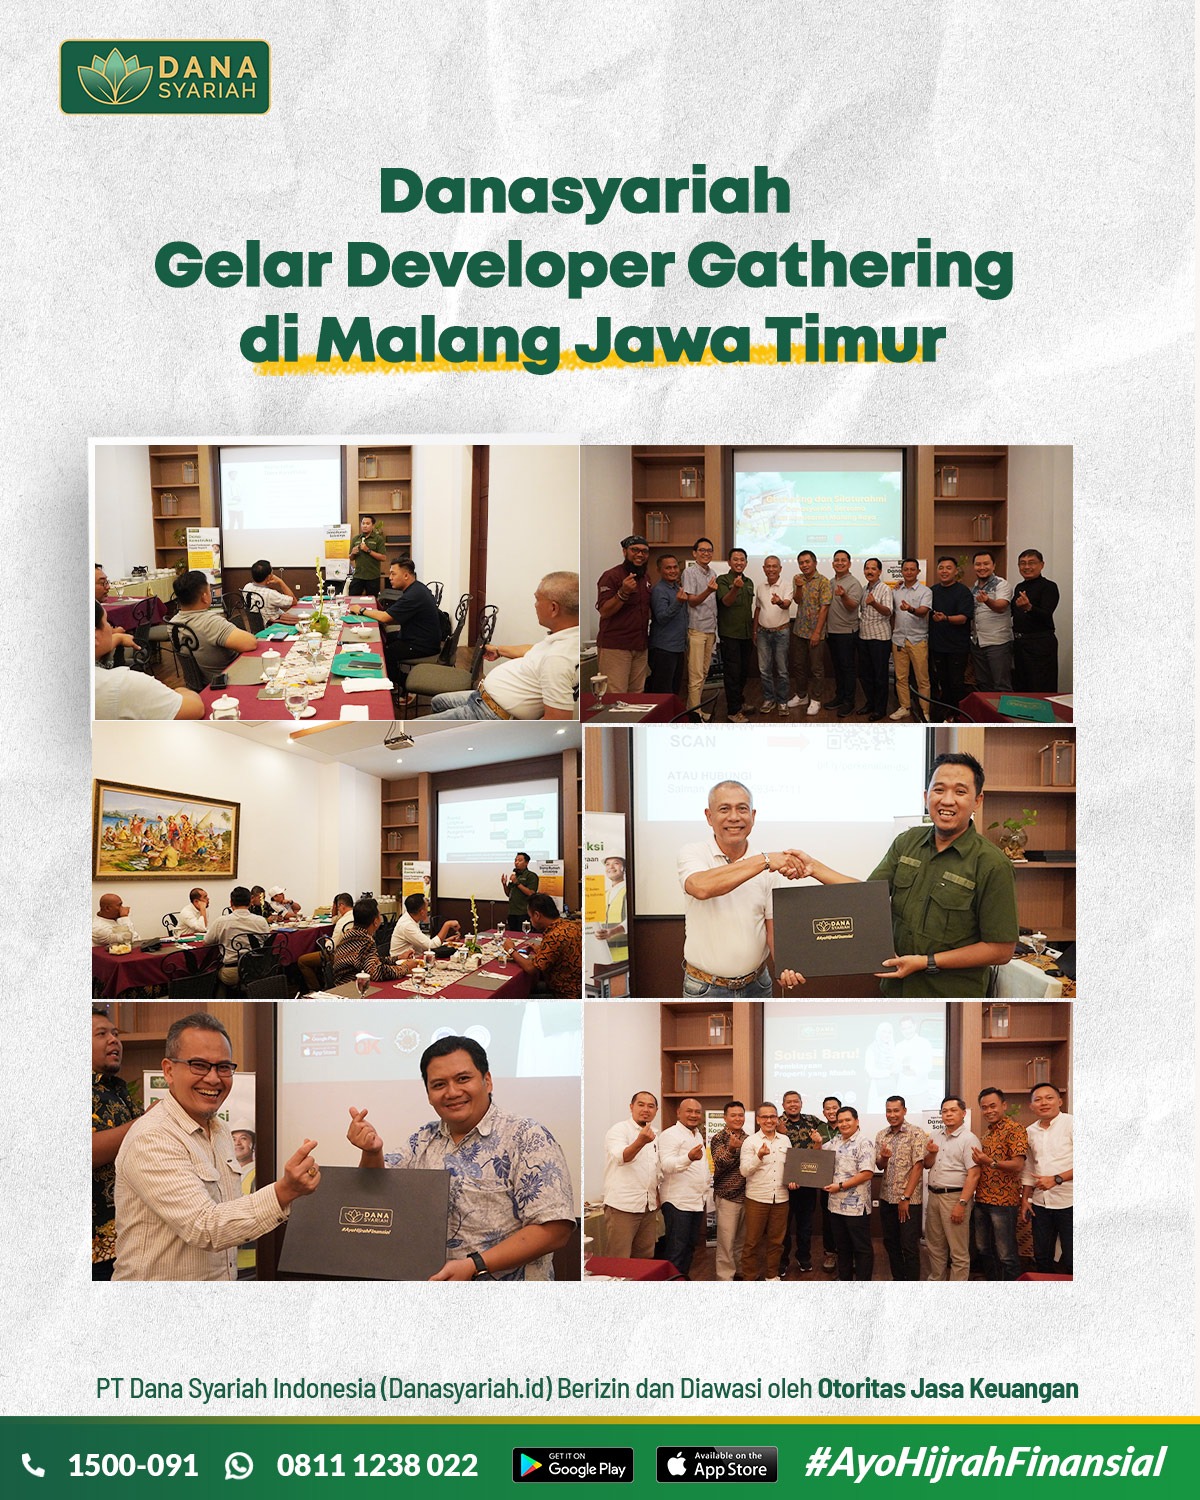 Dana Syariah Danasyariah Gelar Developer Gathering di Malang Jawa Timur